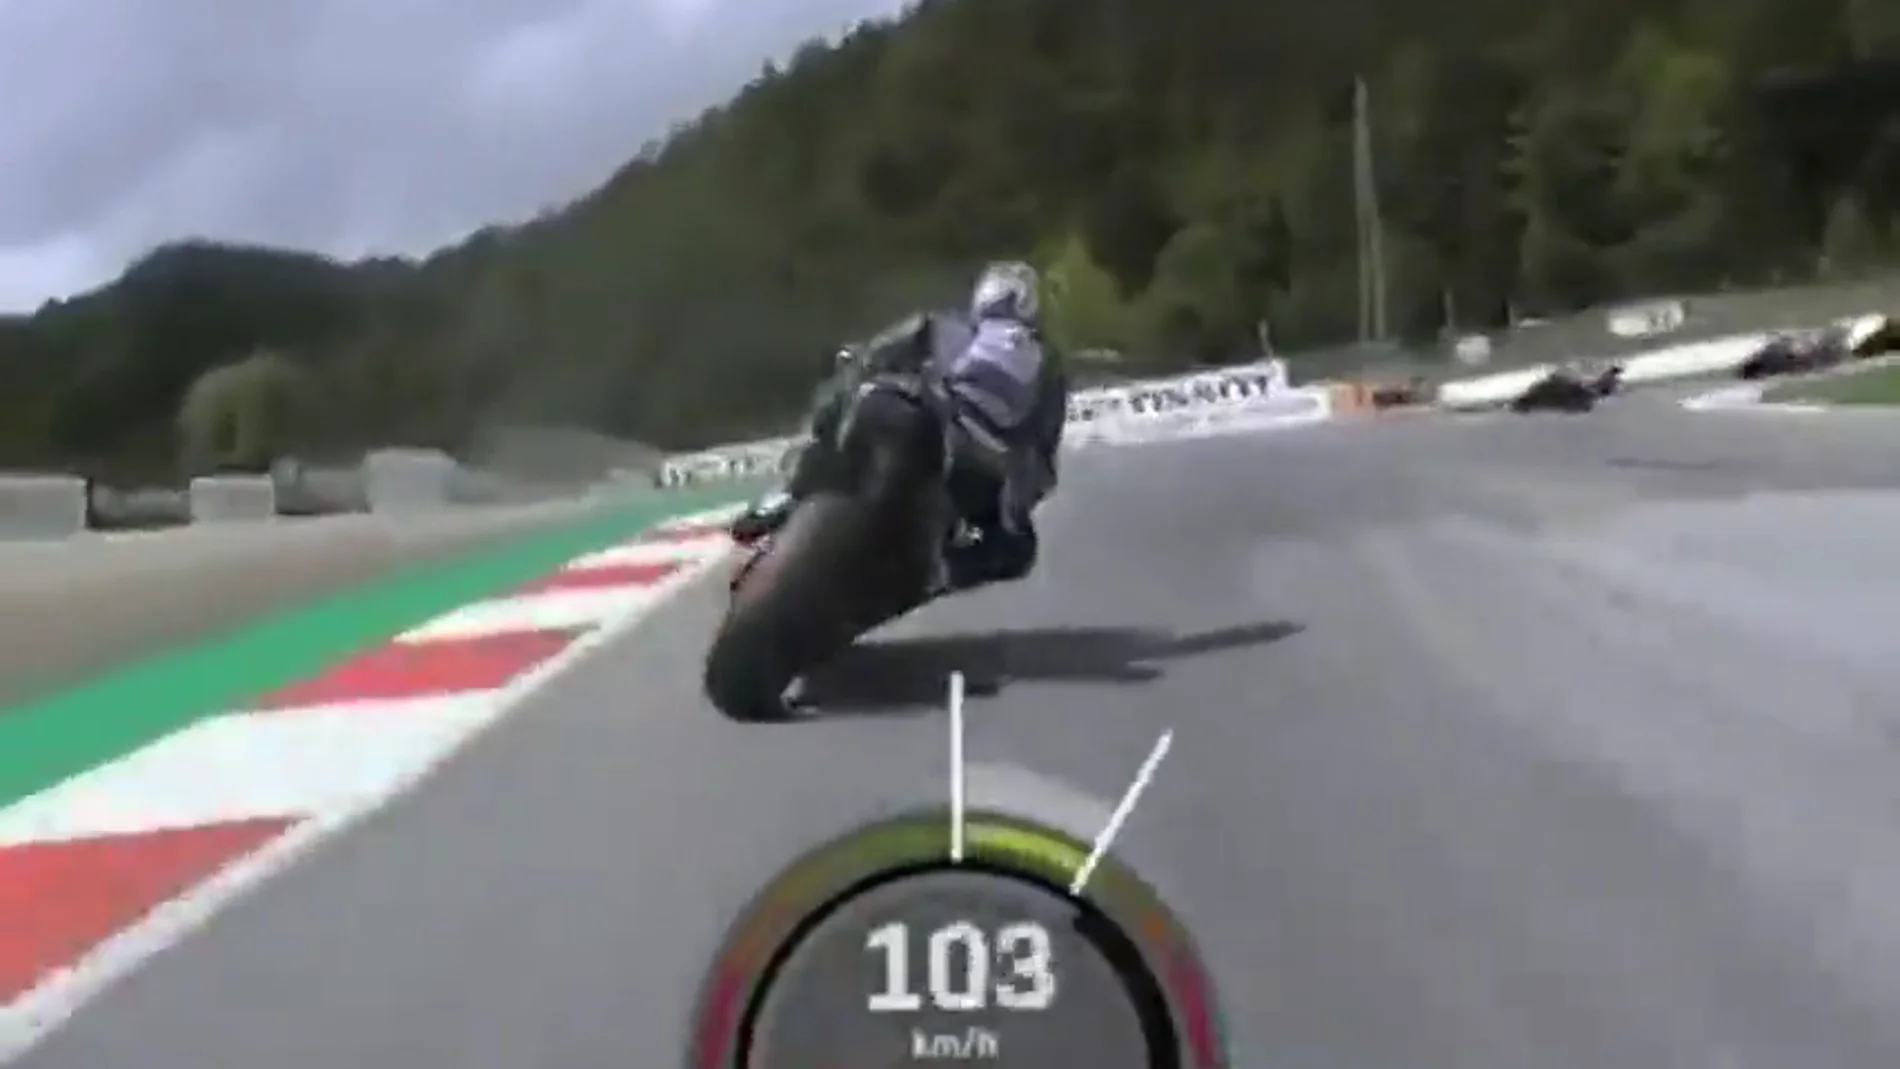 Pone los pelos de punta: el vídeo del accidente de MotoGP desde la cámara 'on board' de Valentino Rossi